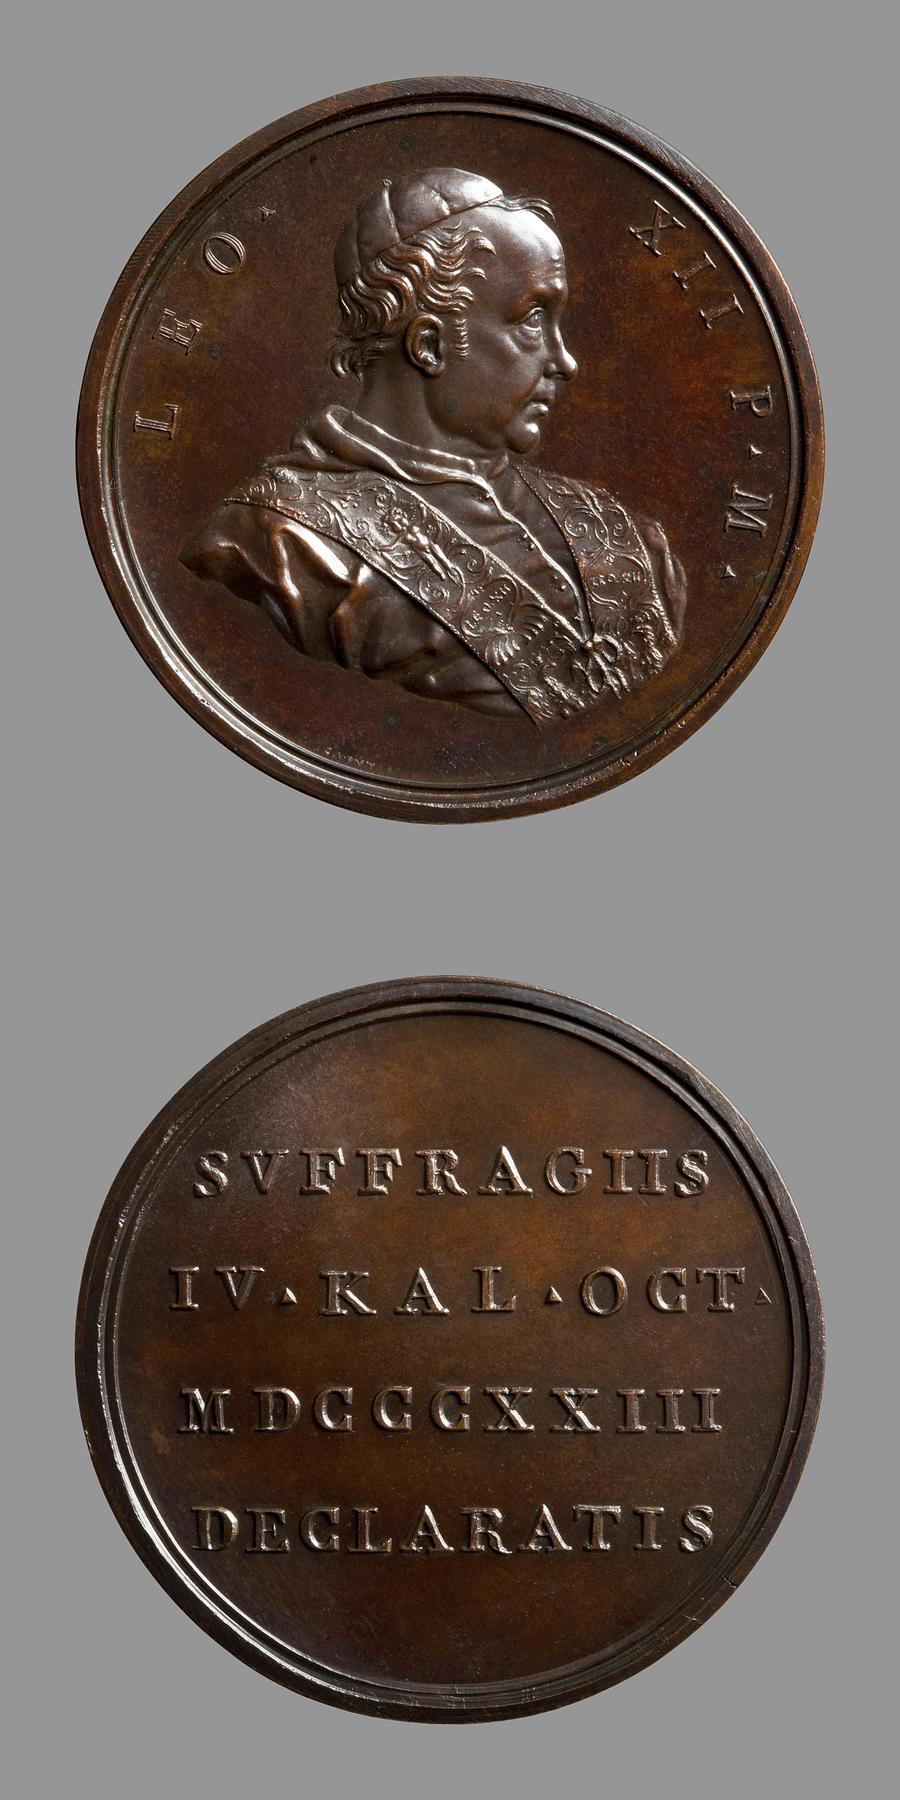 Medaljens forside: Leo 12. Medaljens bagside: Inskription, F132